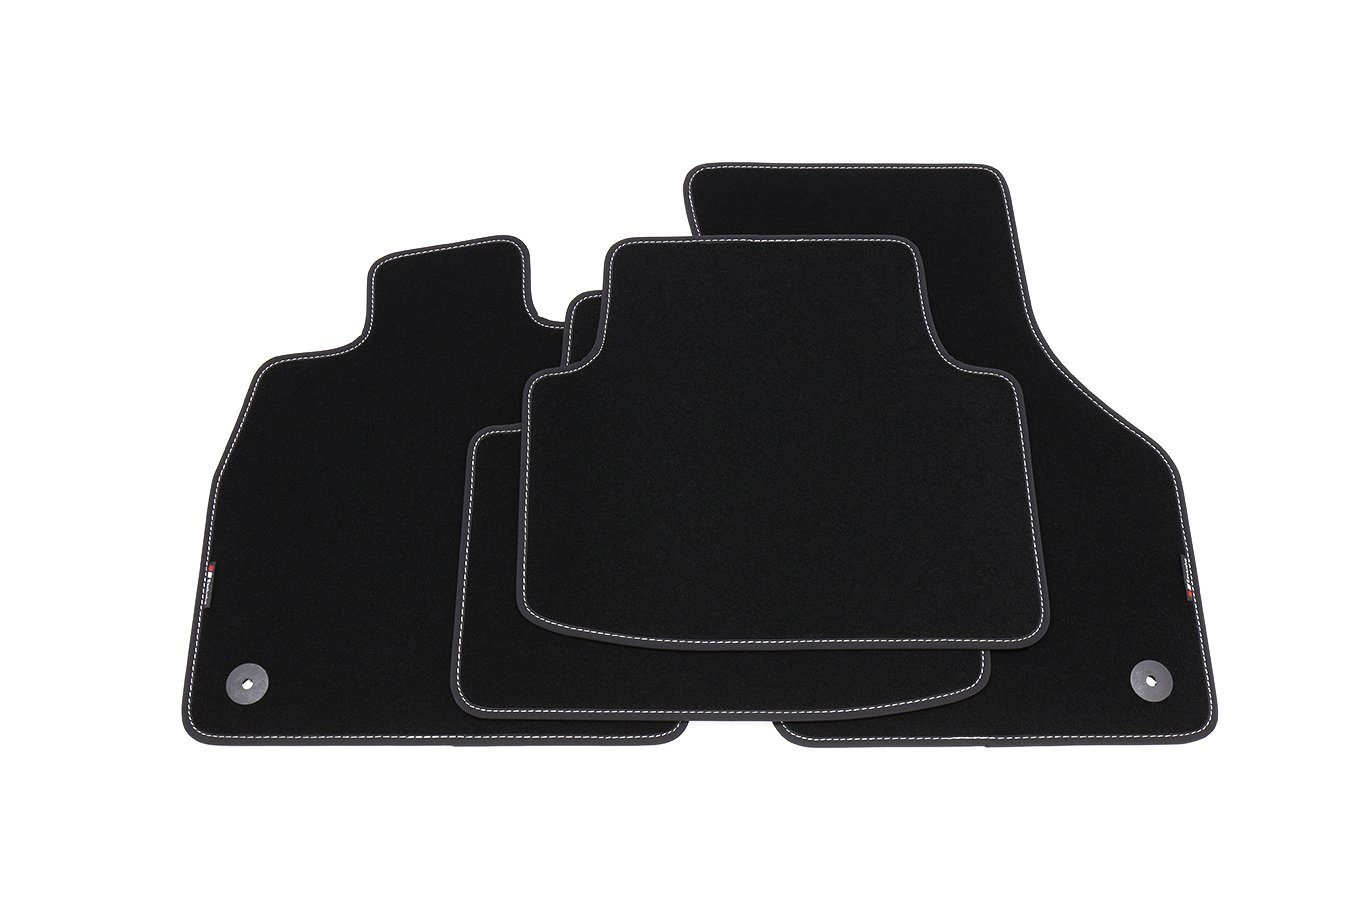 EF210 teileplus24 Fußmatten mit 2014- B8 kompatibel Set Velours Passat 3G VW Auto-Fußmatten